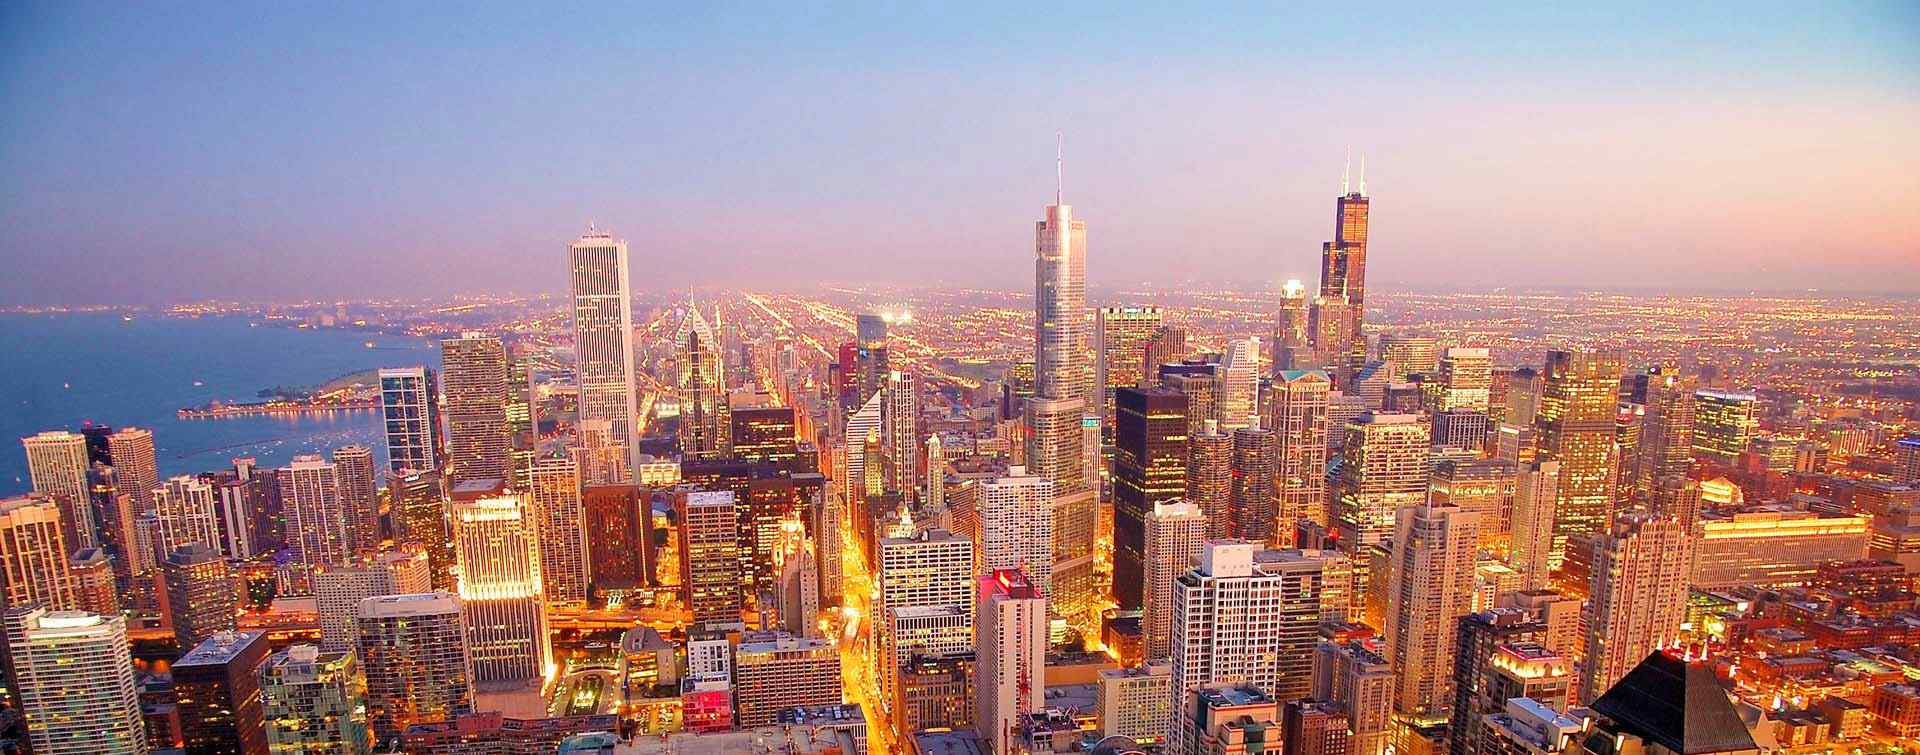 芝加哥_美国芝加哥_芝加哥旅游_芝加哥图片_芝加哥高清壁纸